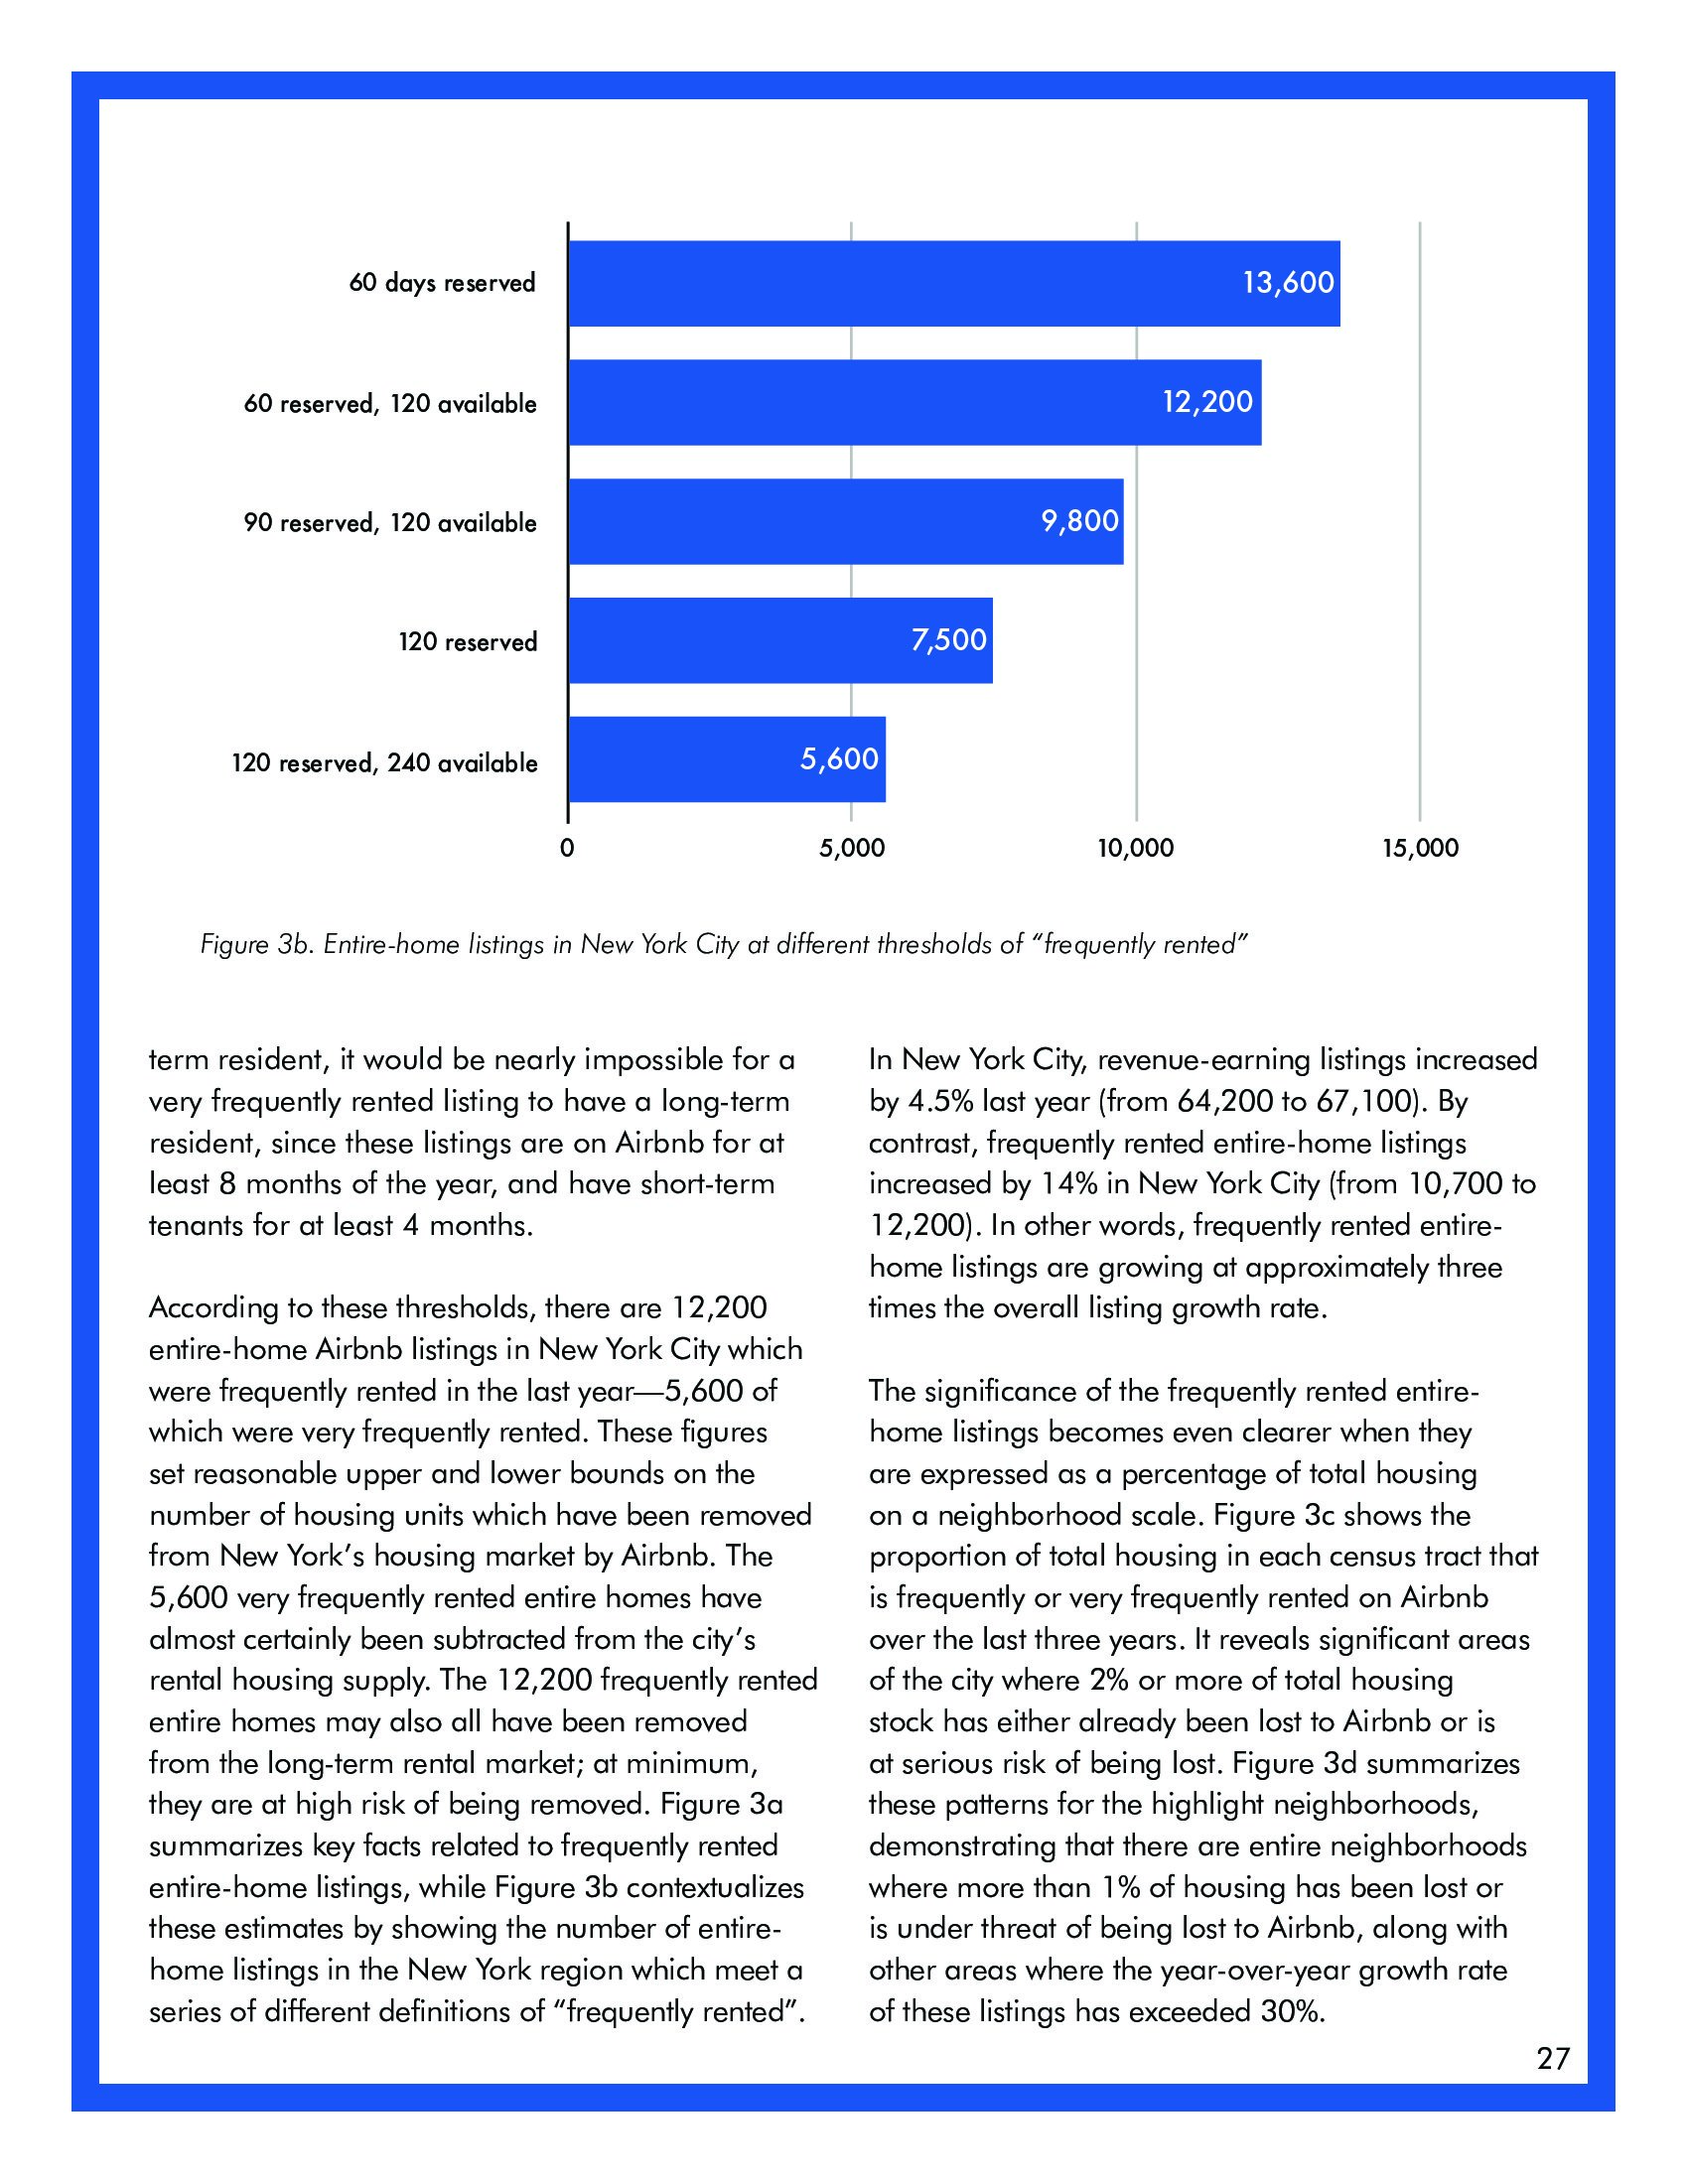 麦吉尔大学：关于纽约市短租的高成本报告(图27)